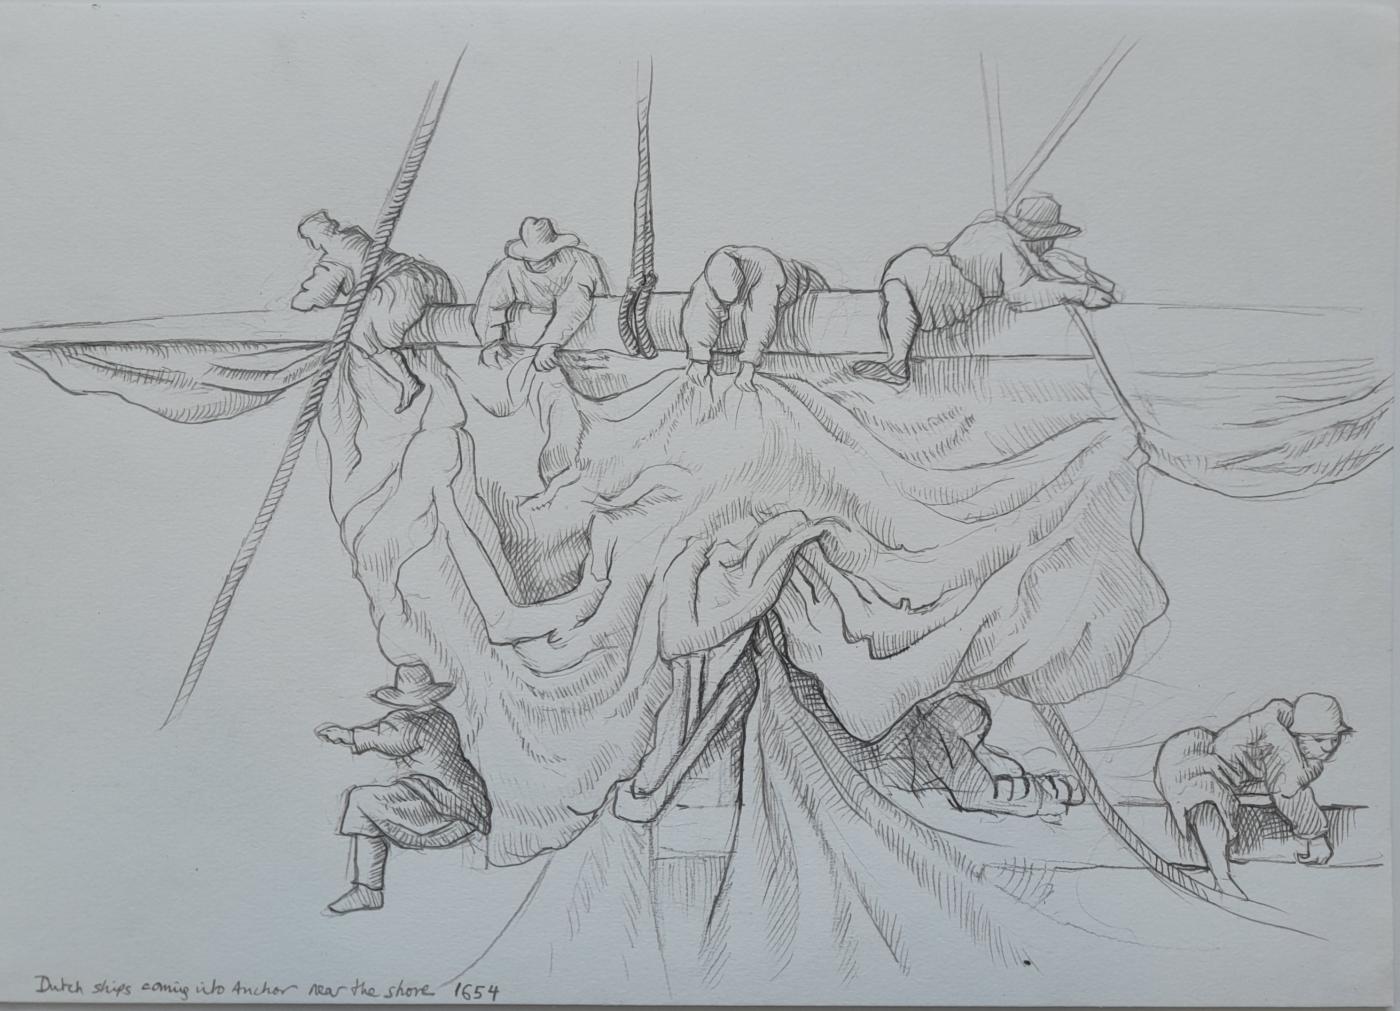 An image showing '"Sailors hoisting the sails. Detail study of Van de Velde pen painting"'